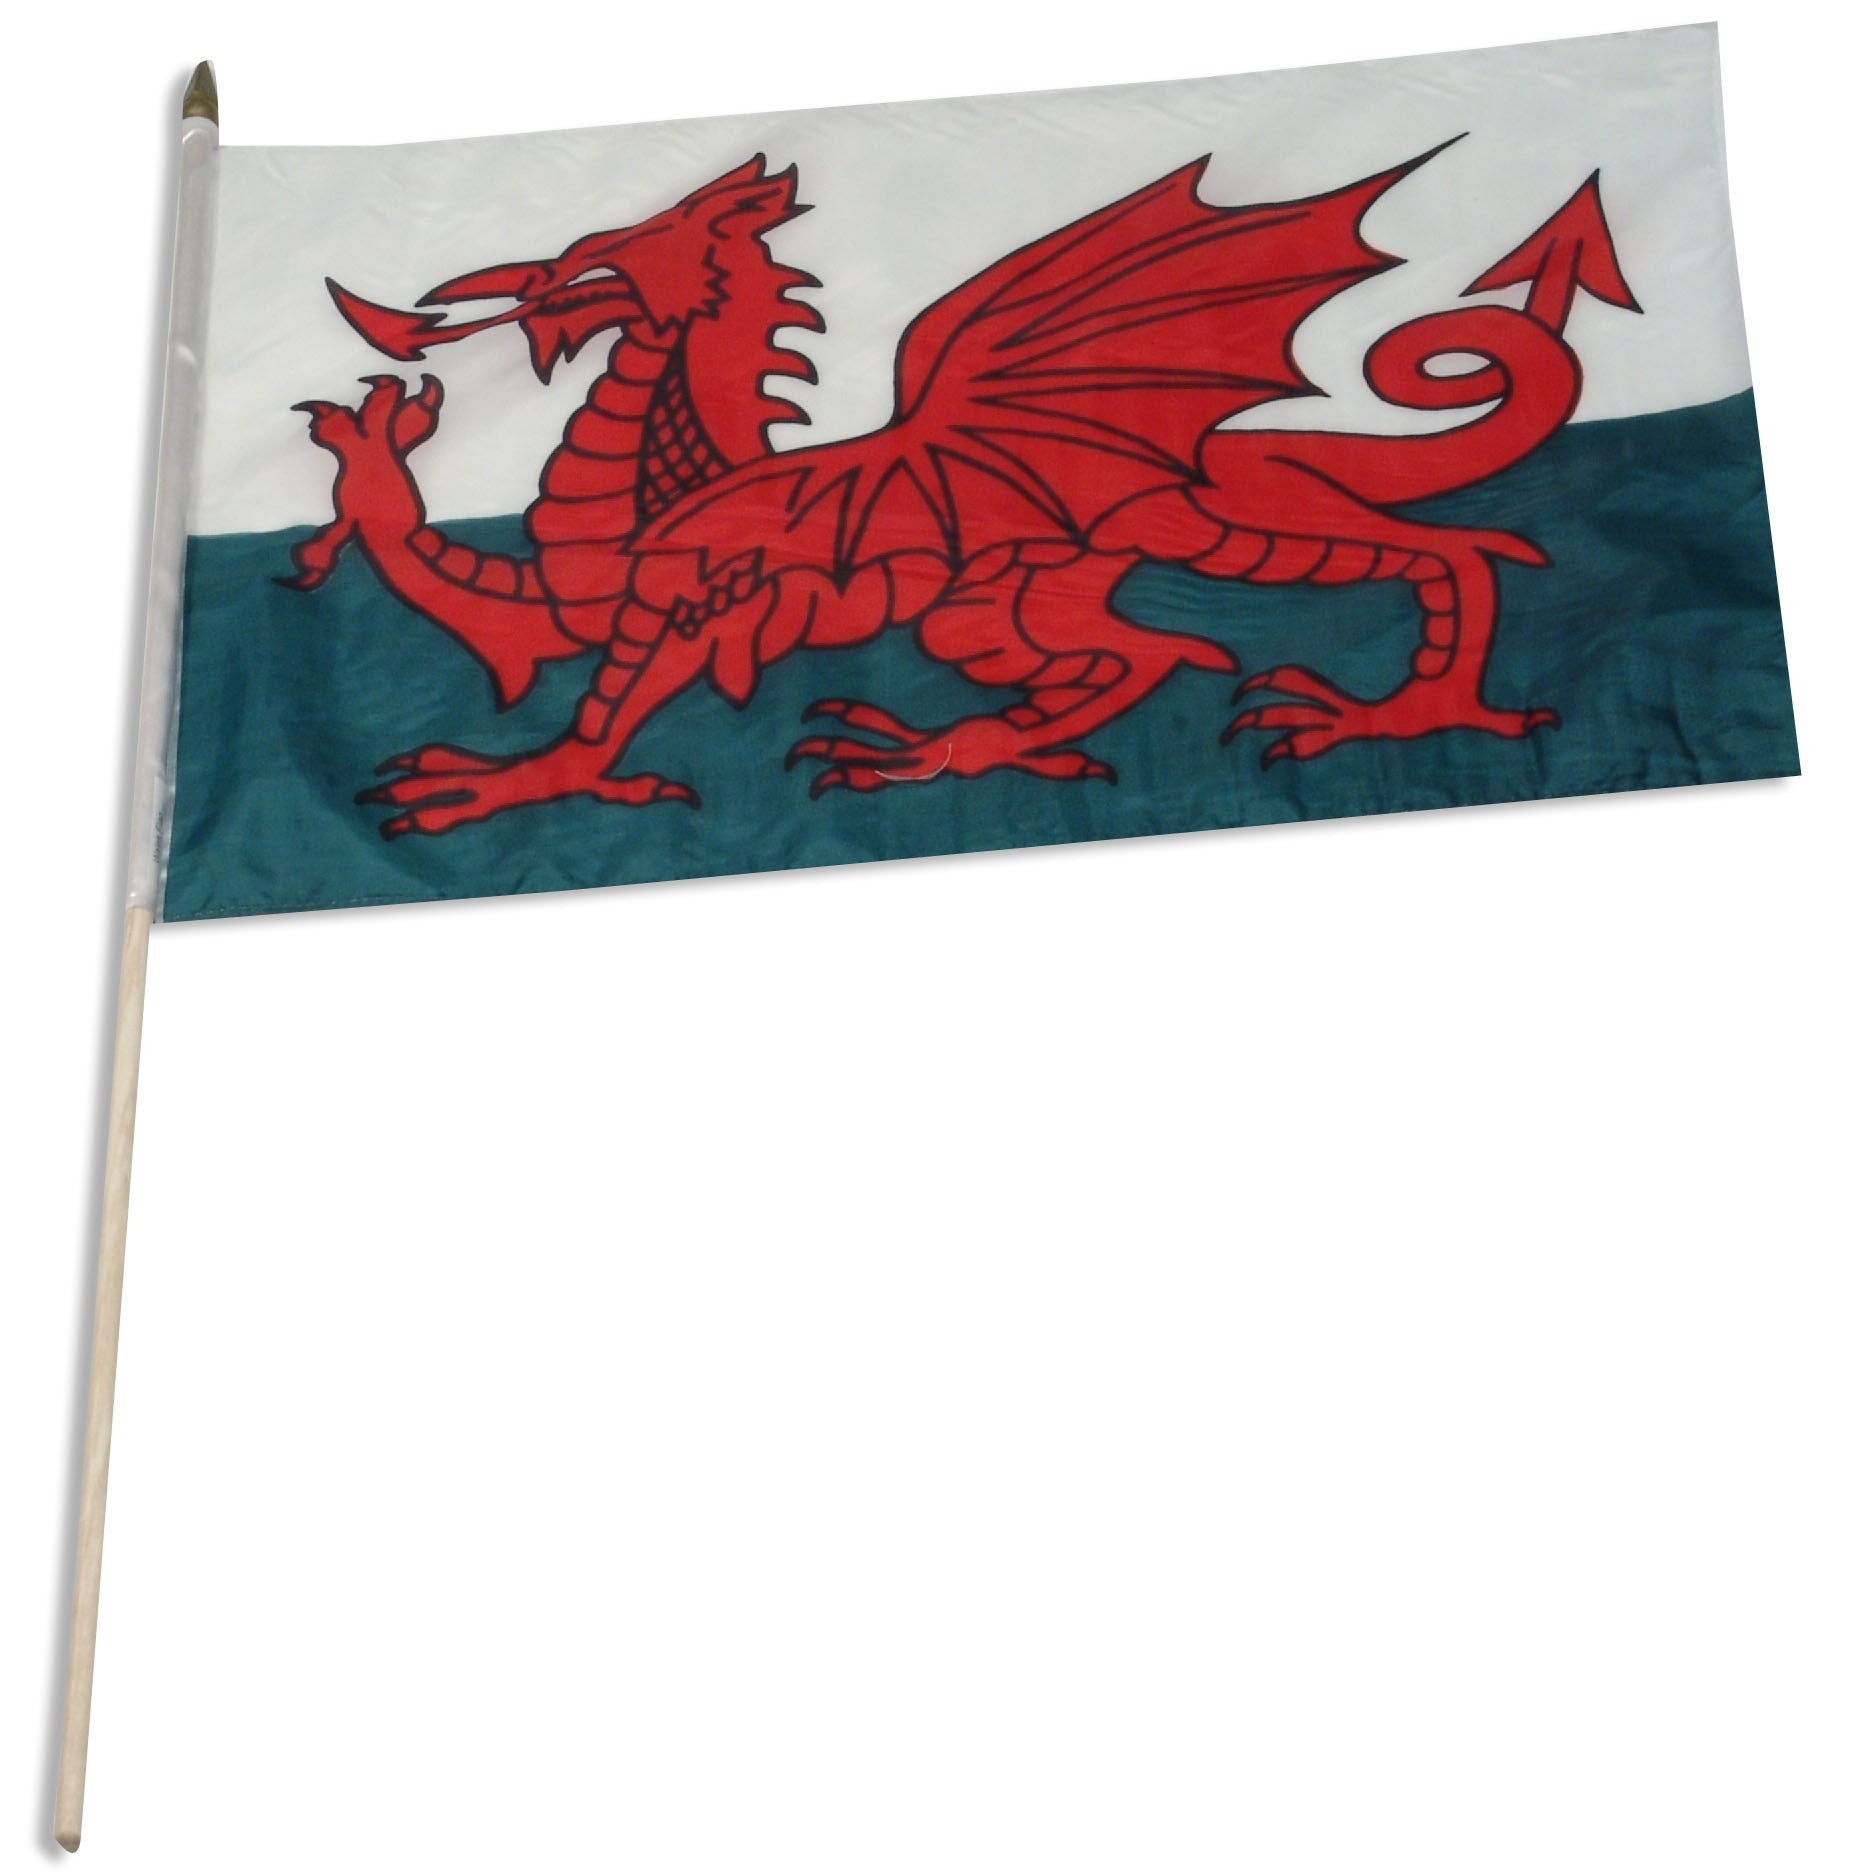 Bandera de palo montada de Gales de 12 x 18 pulgadas